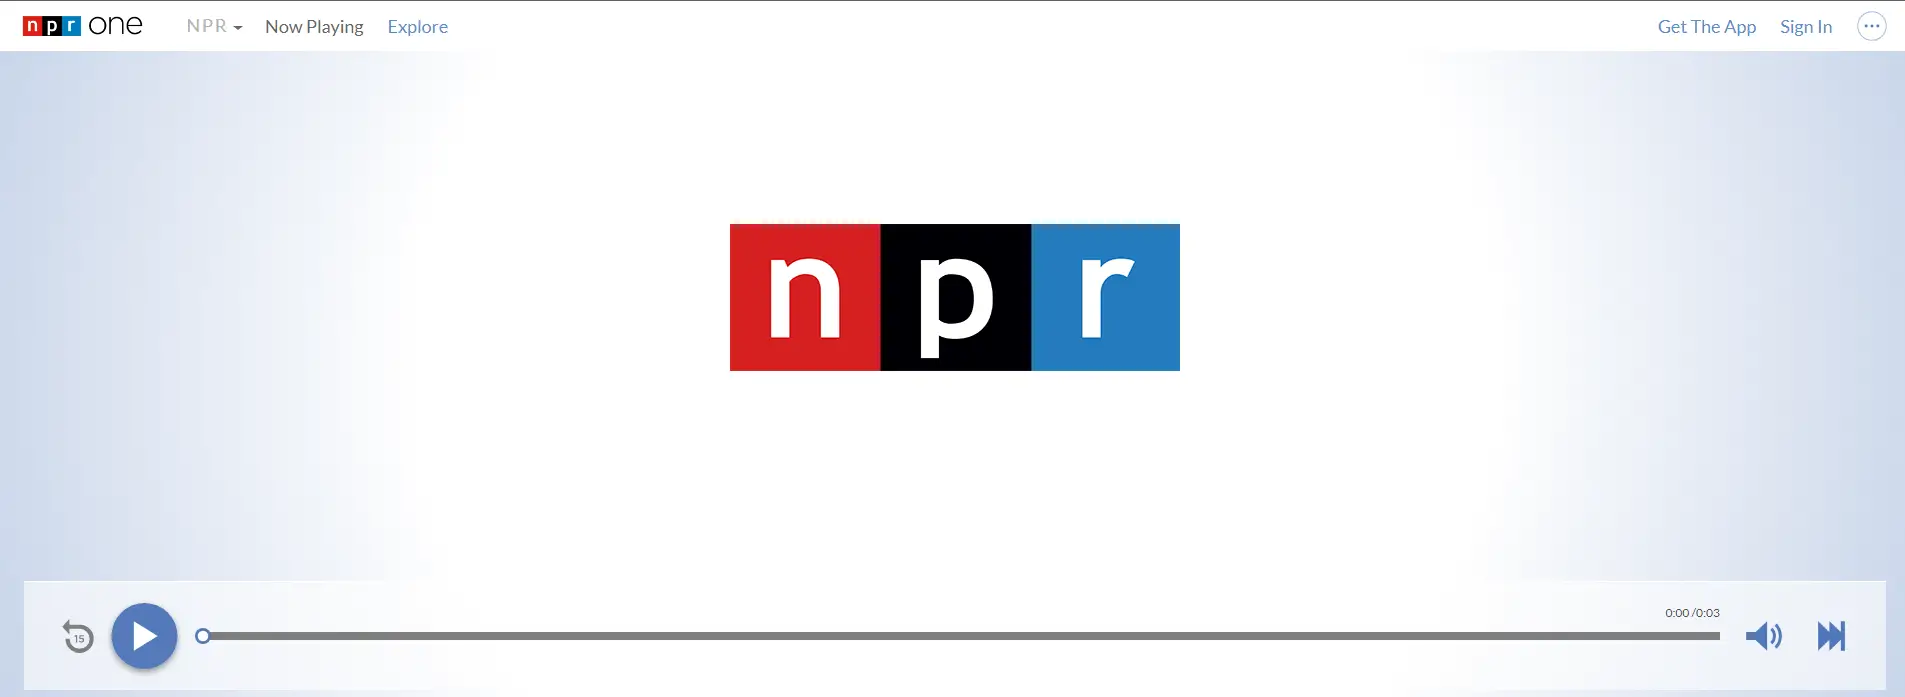 NPR One Noticias de calidad y contenido de radio